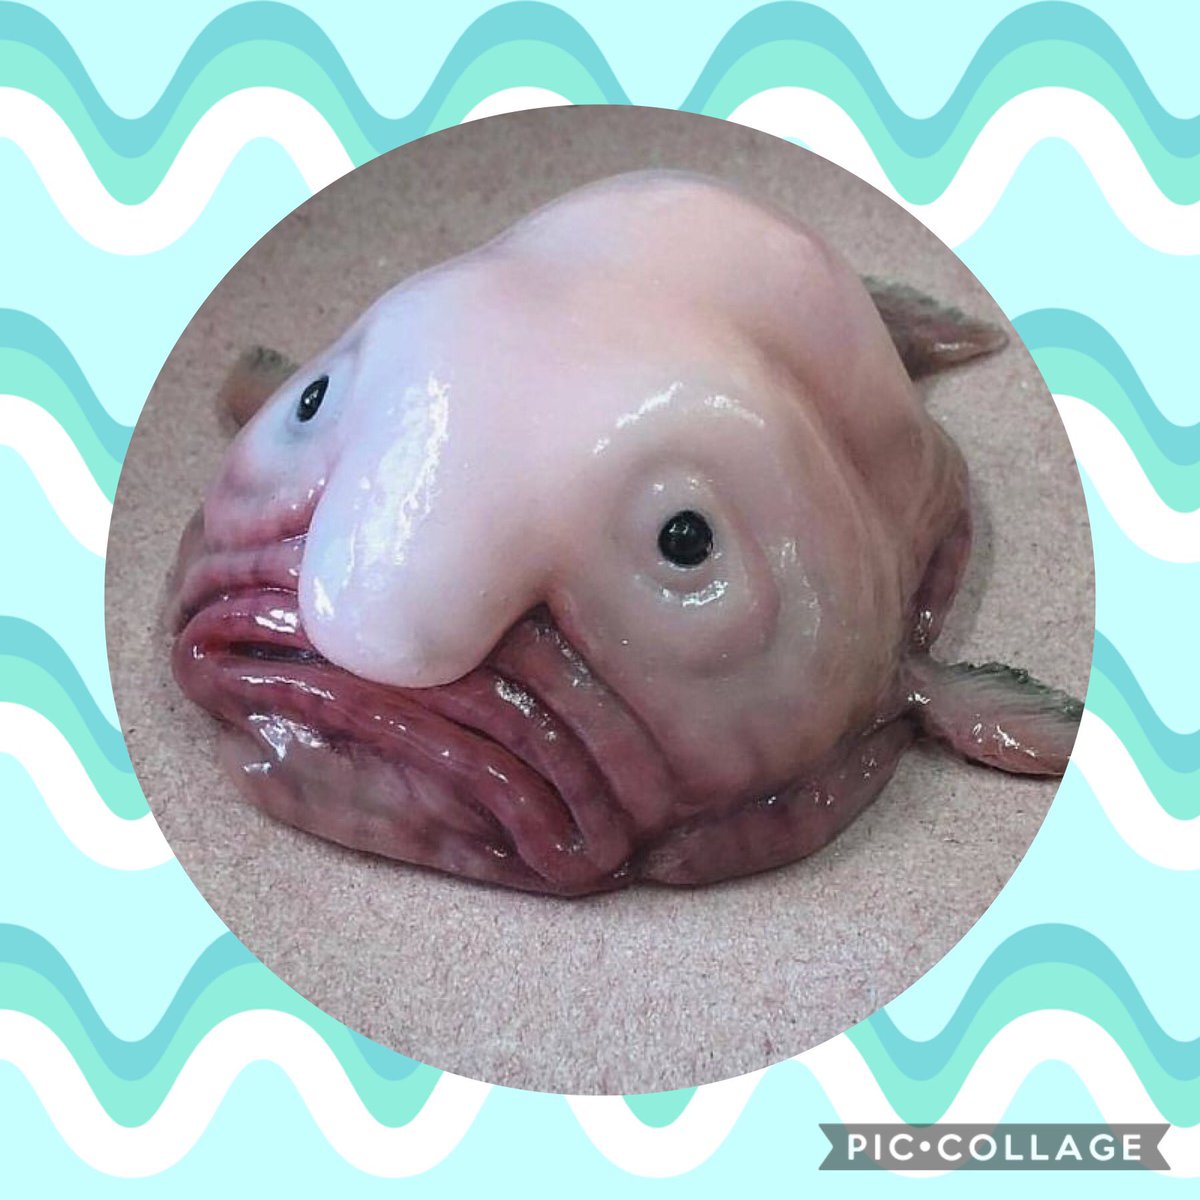 Nao V Tvittere ブロブフィッシュは別名 ニュウドウカジカ とも呼ばれる深海魚で 世界で最も醜い生き物コンテスト で堂々の1位に輝いたそうです なんか とぅるっとしてかわいいな